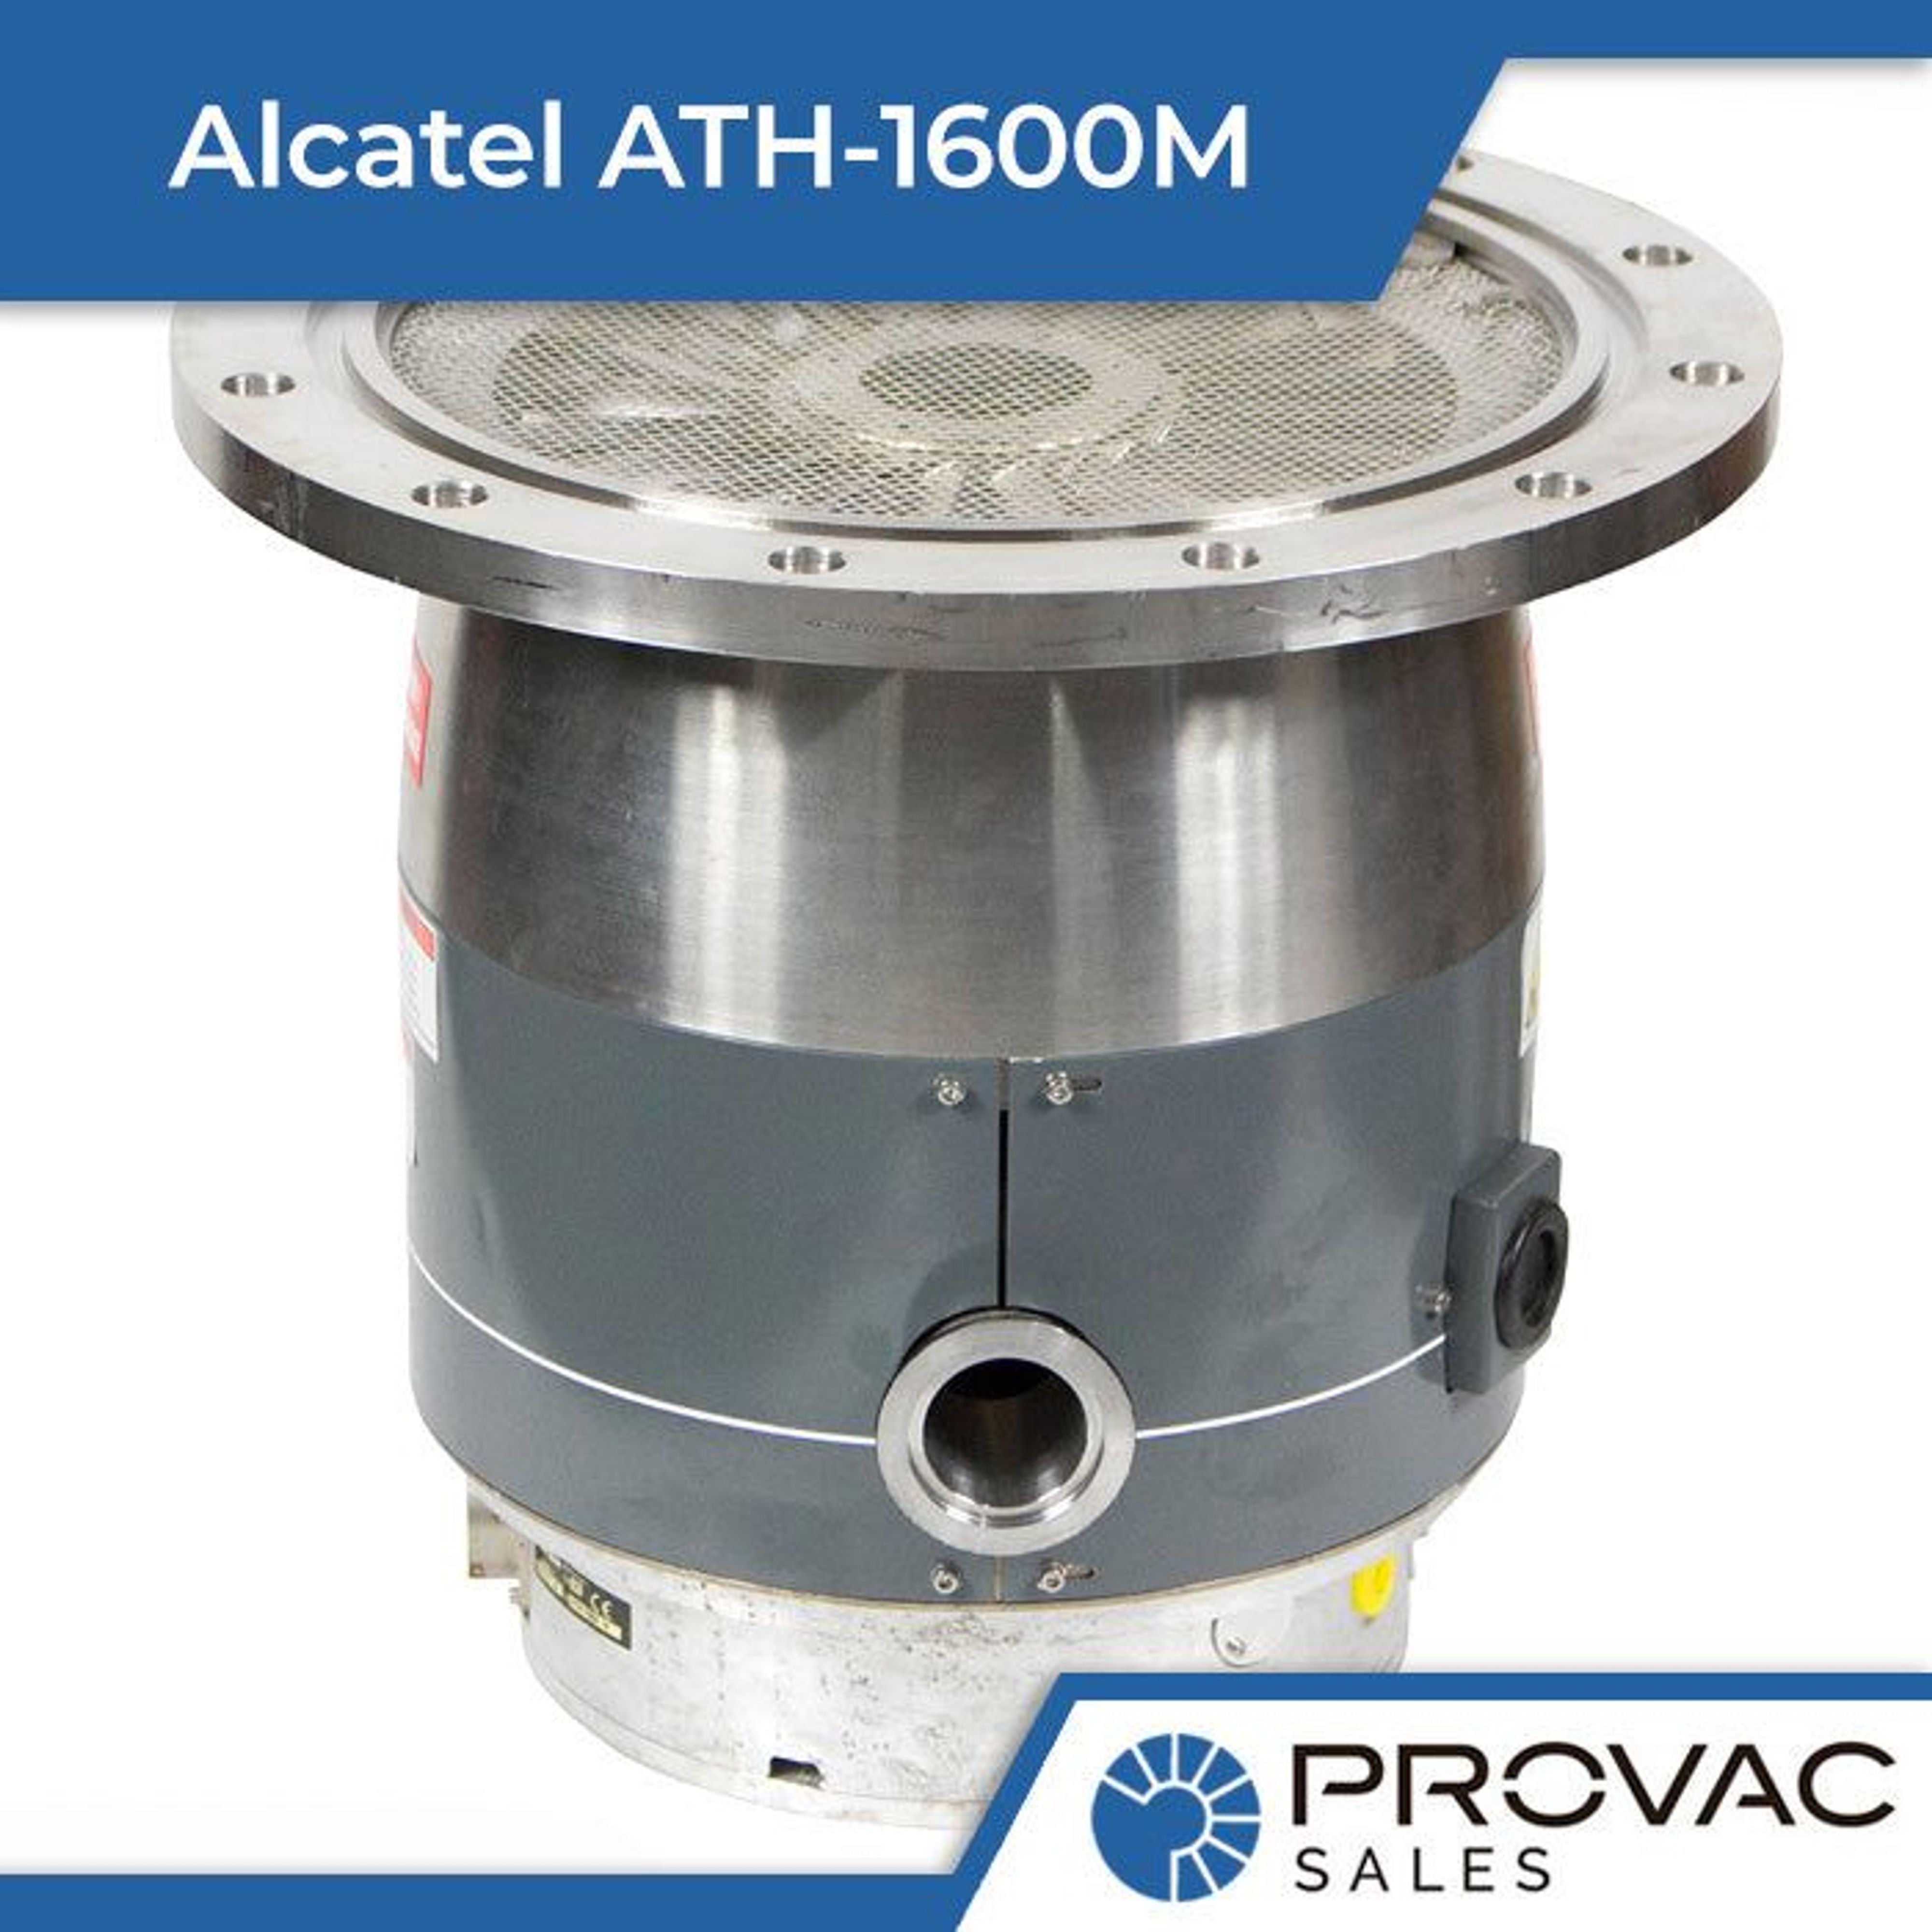 Alcatel ATH-1600M Turbomolecular Pump Background